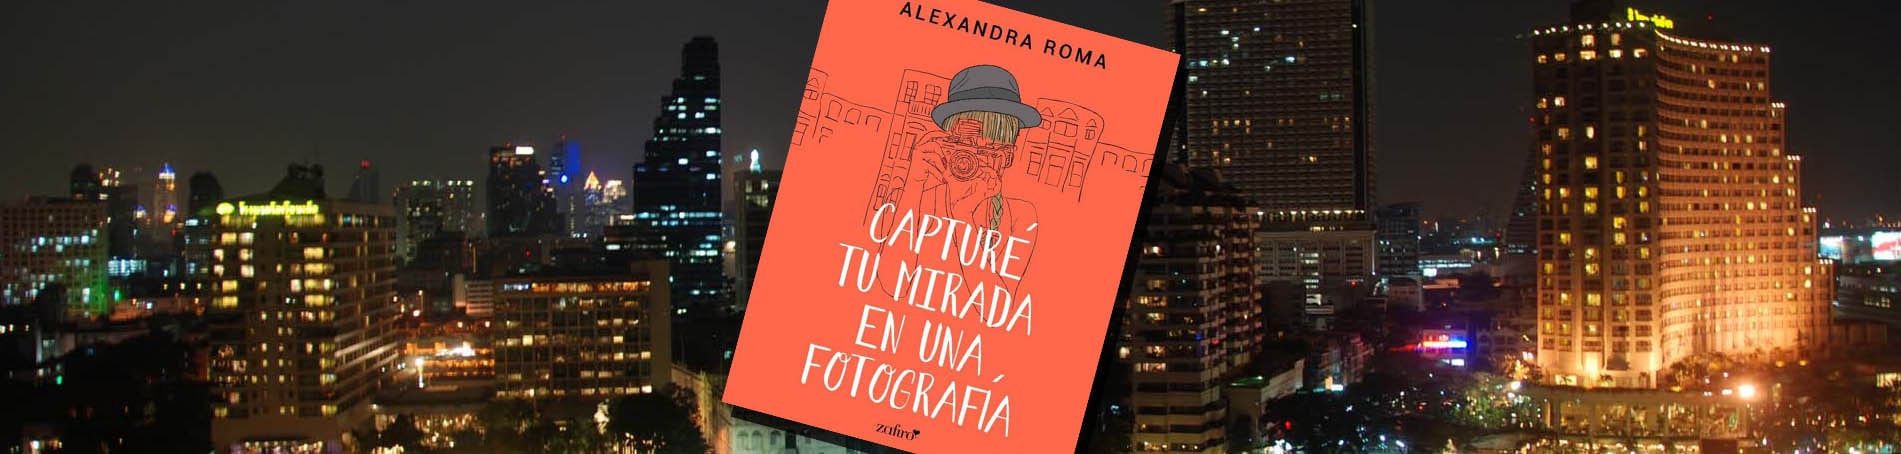 Alexandra Roma nos cuenta como nació Capturé tu mirada en una fotografía